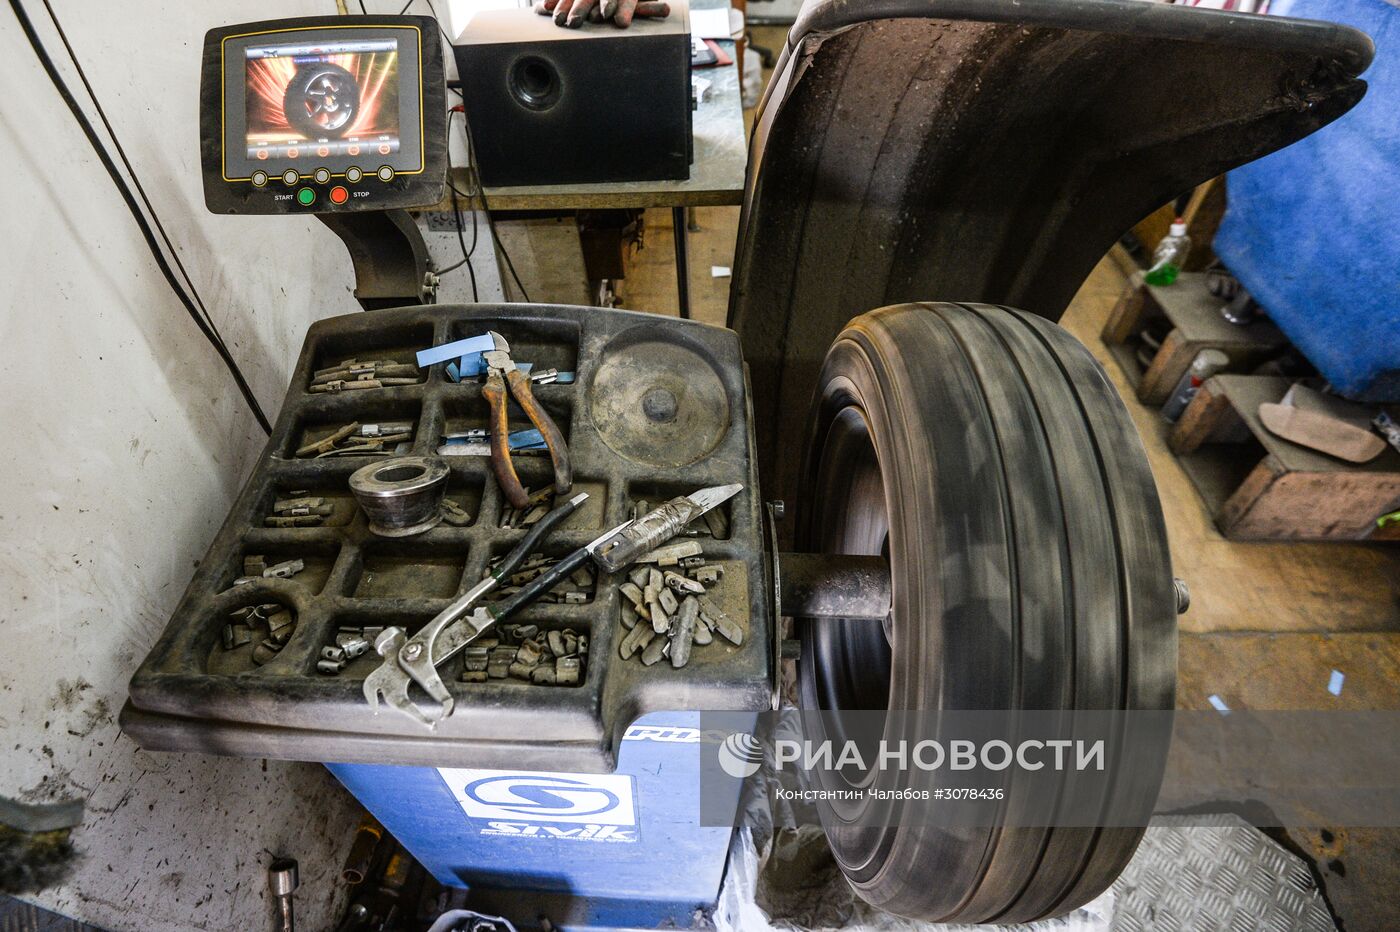 Работа шиномонтажной мастерской в Великом Новгороде